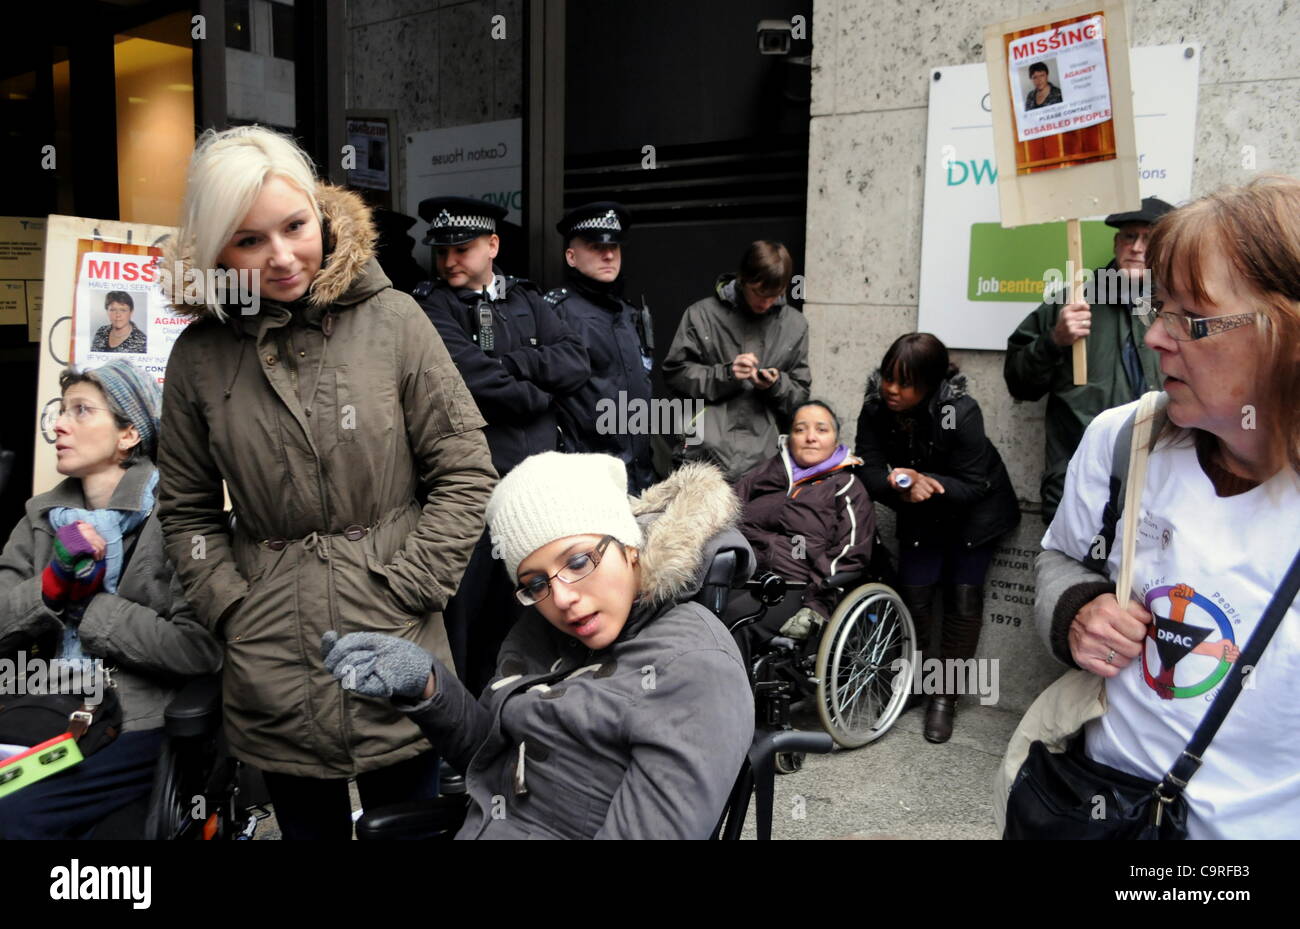 Londra, Regno Unito. 13/02/12. Le persone disabili contro i tagli e il diritto al lavoro gli attivisti protesta al di fuori della sede del Dipartimento del Lavoro e delle pensioni a Londra in Tothill Street. Foto Stock